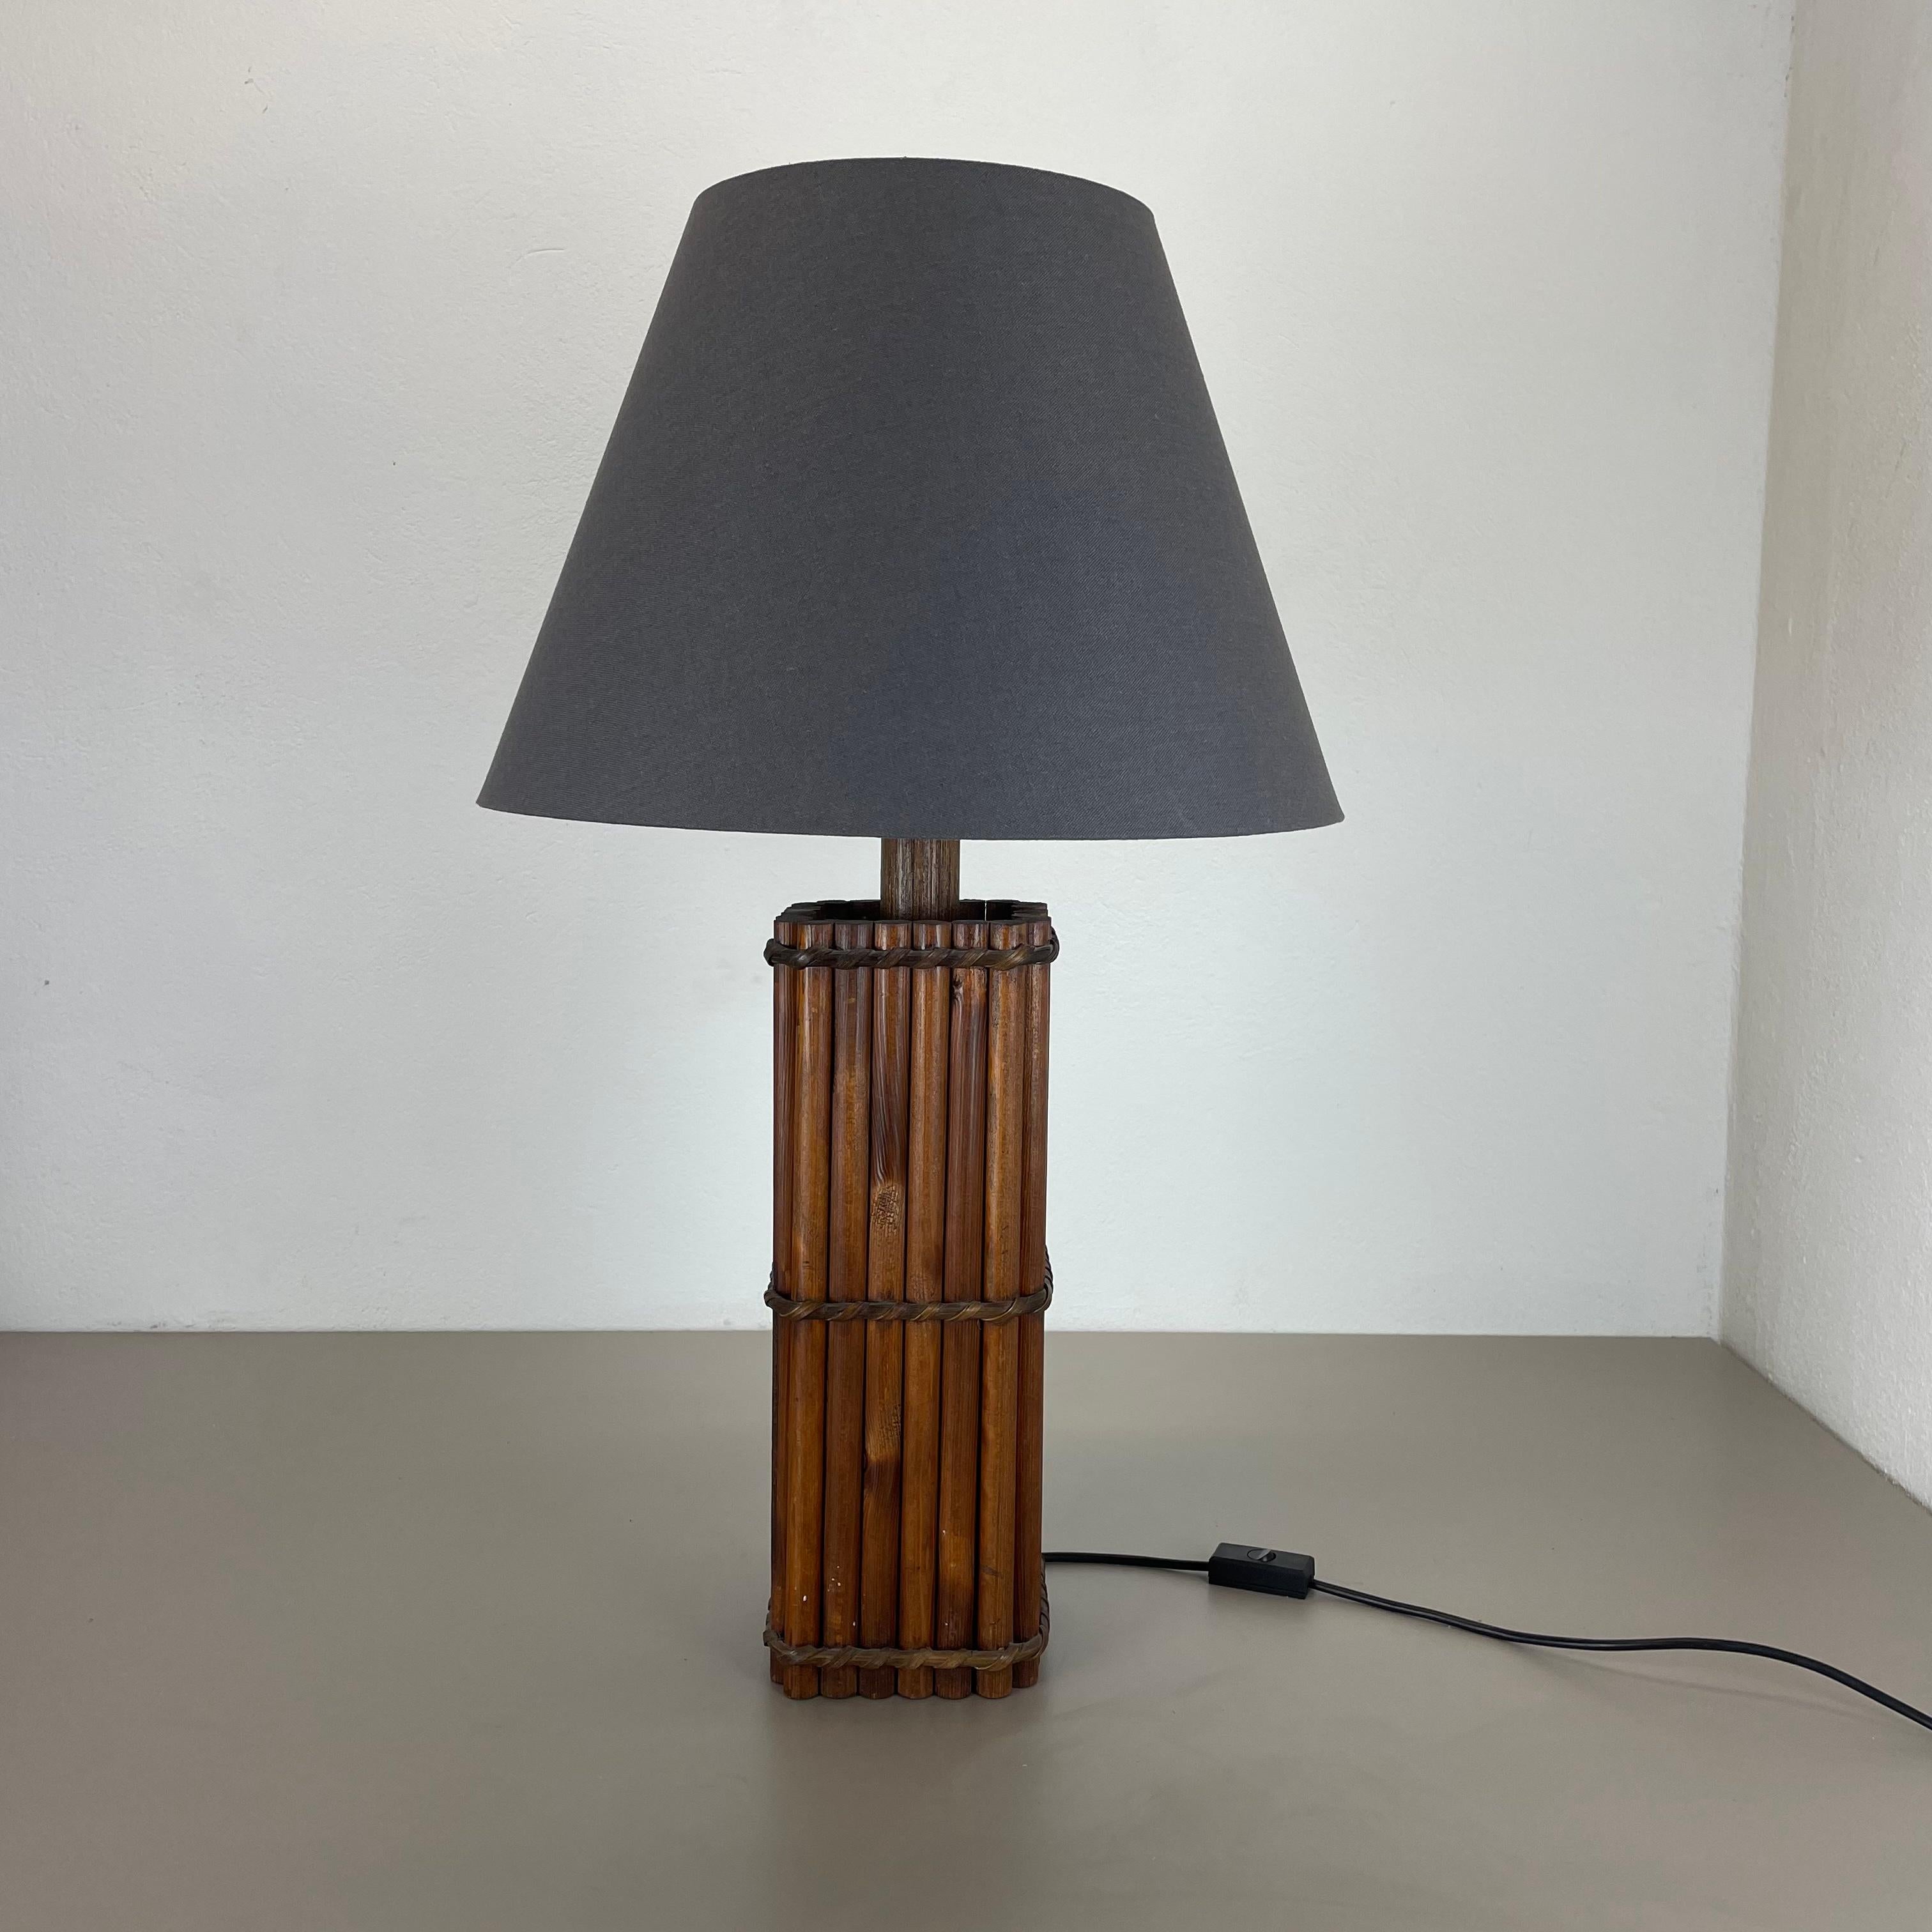 Artikel:

modernistische Holztischleuchte 


Herkunft:

Italien


Jahrzehnt:

1970s



Diese originelle Vintage-Leuchte wurde in den 1970er Jahren in Italien entworfen und hergestellt. Der Leuchtensockel besteht aus massiven Holzrohrteilen mit